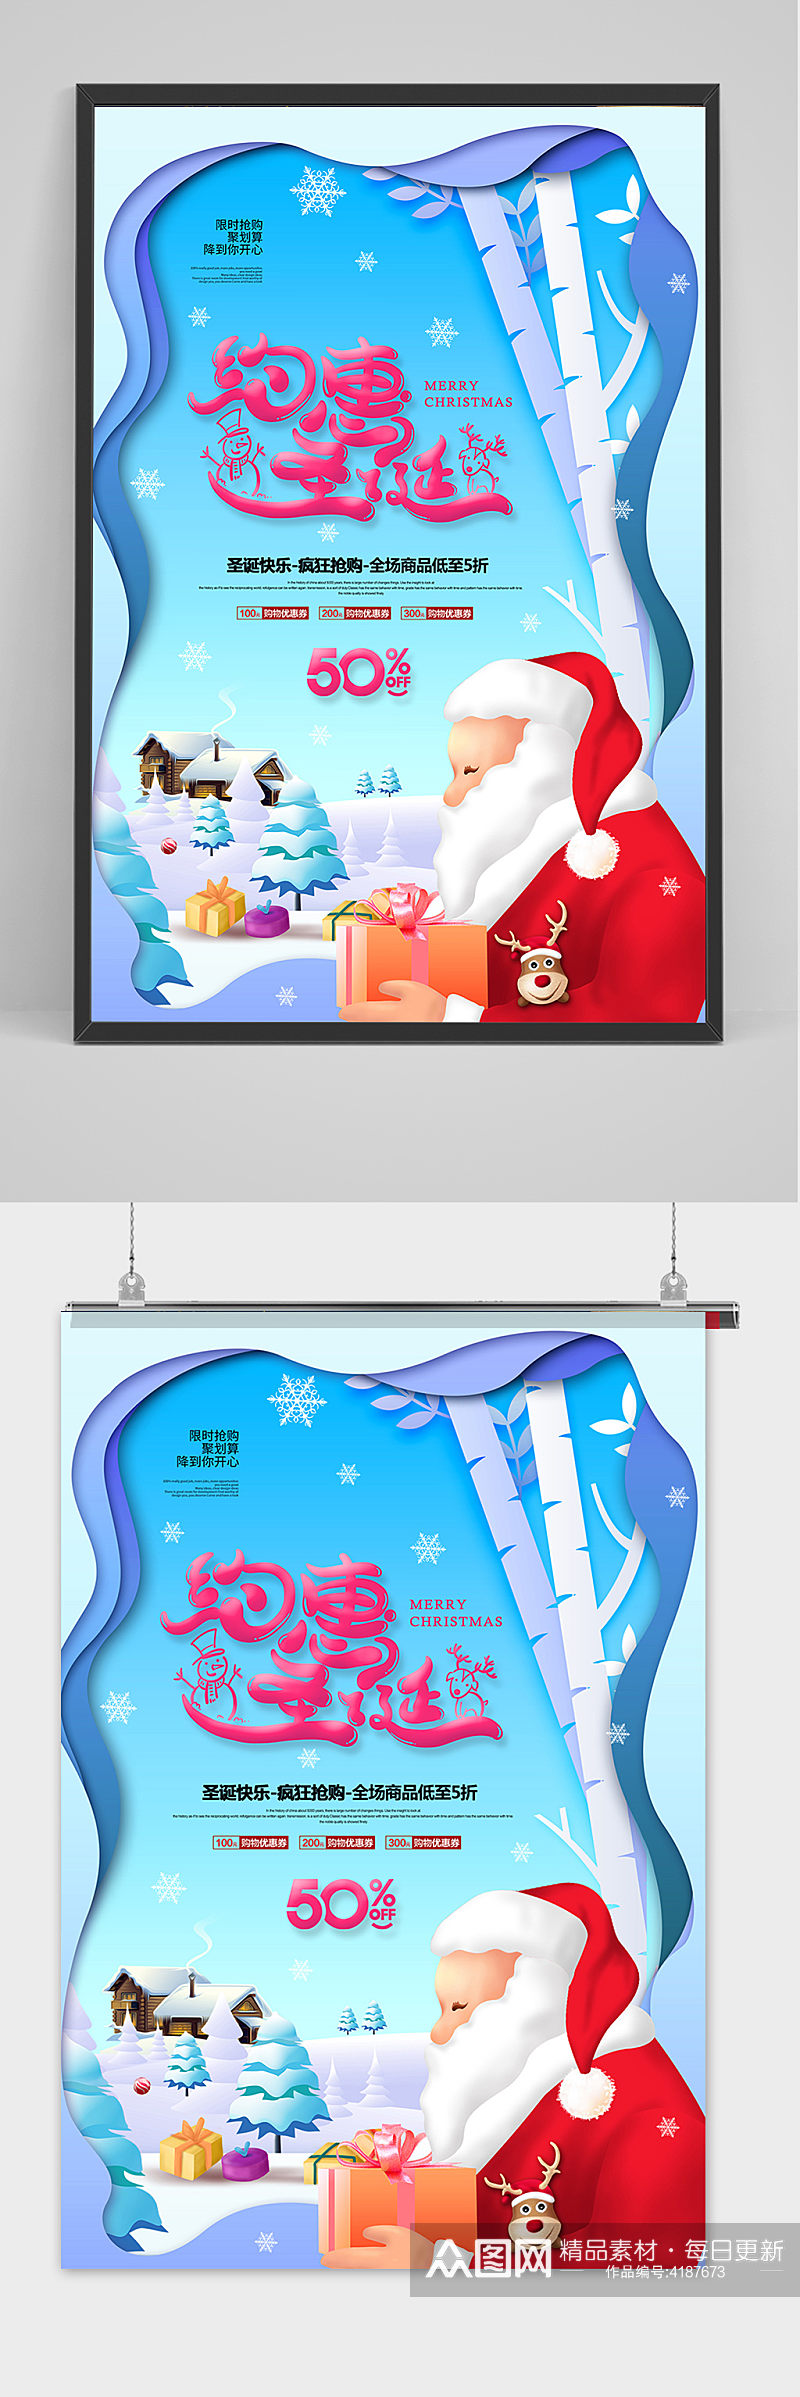 约惠圣诞节商场促销海报设计素材